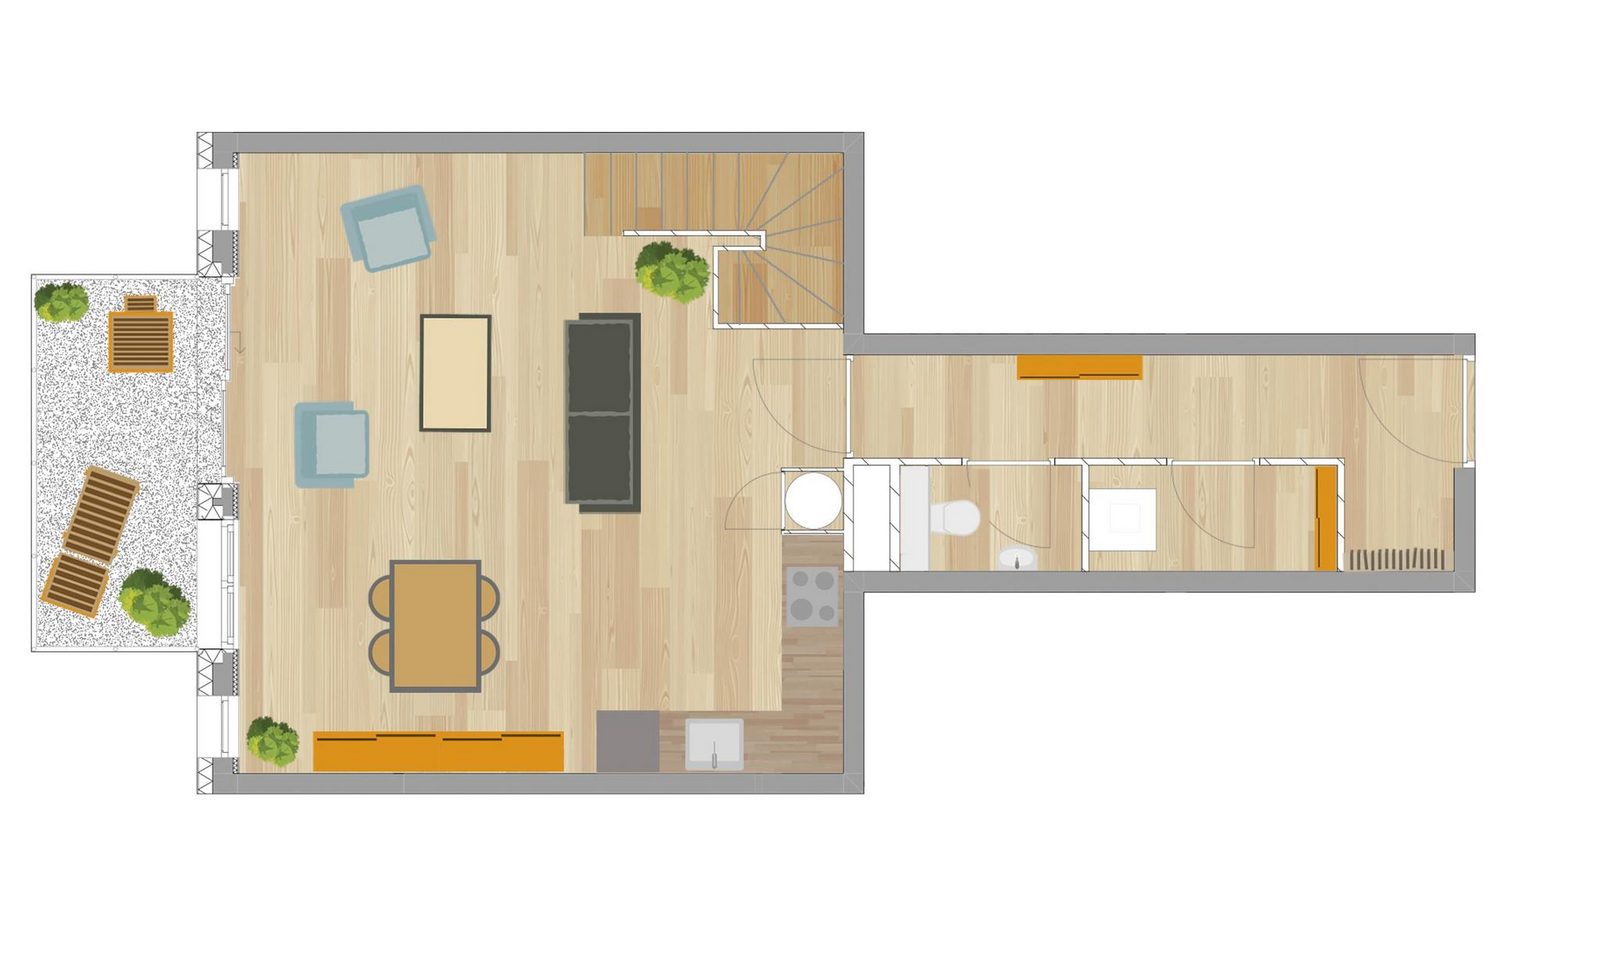 Appartement 3 pièces (duplex) | 4/5 personnes, Méri-Bellecombe 502